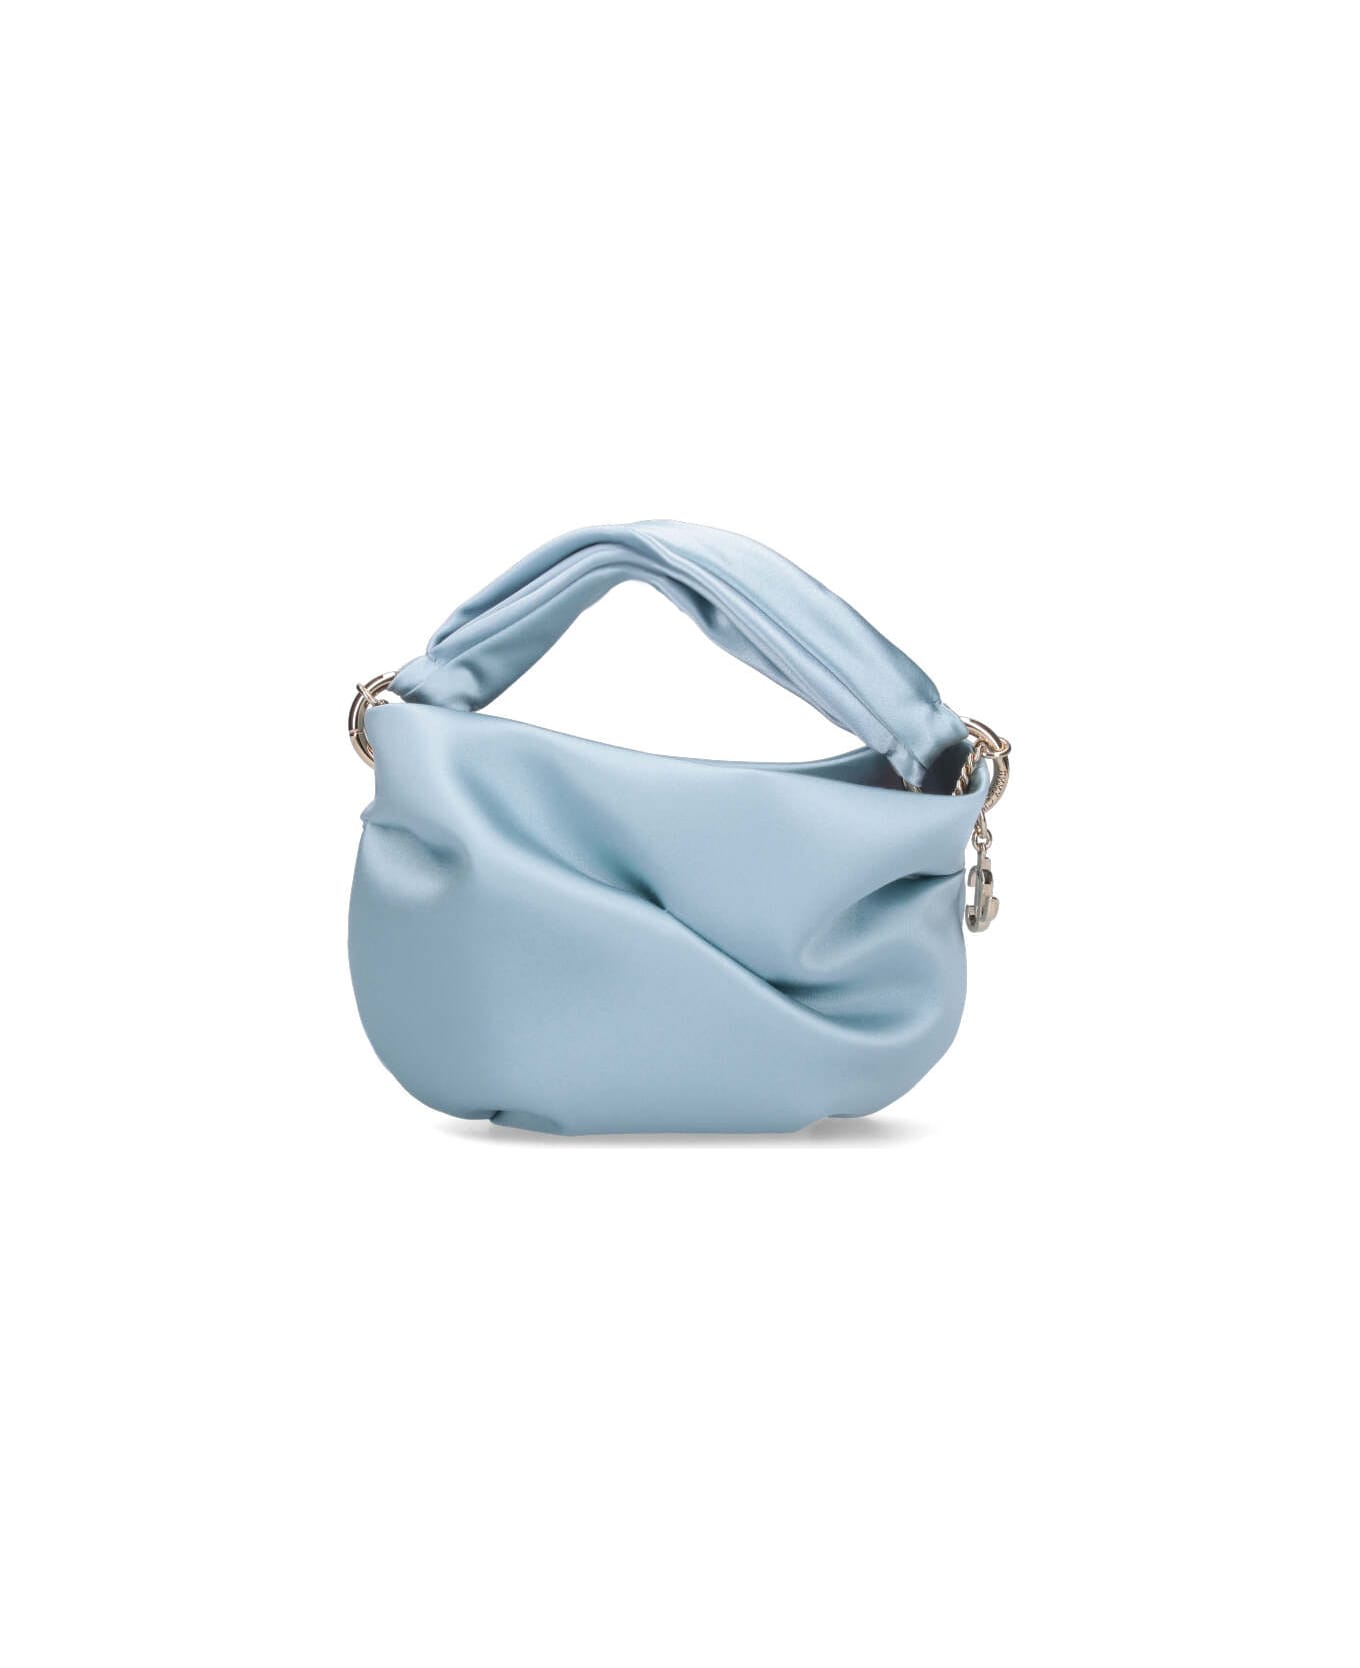 Jimmy Choo 'bonny' Handbag - Light Blue